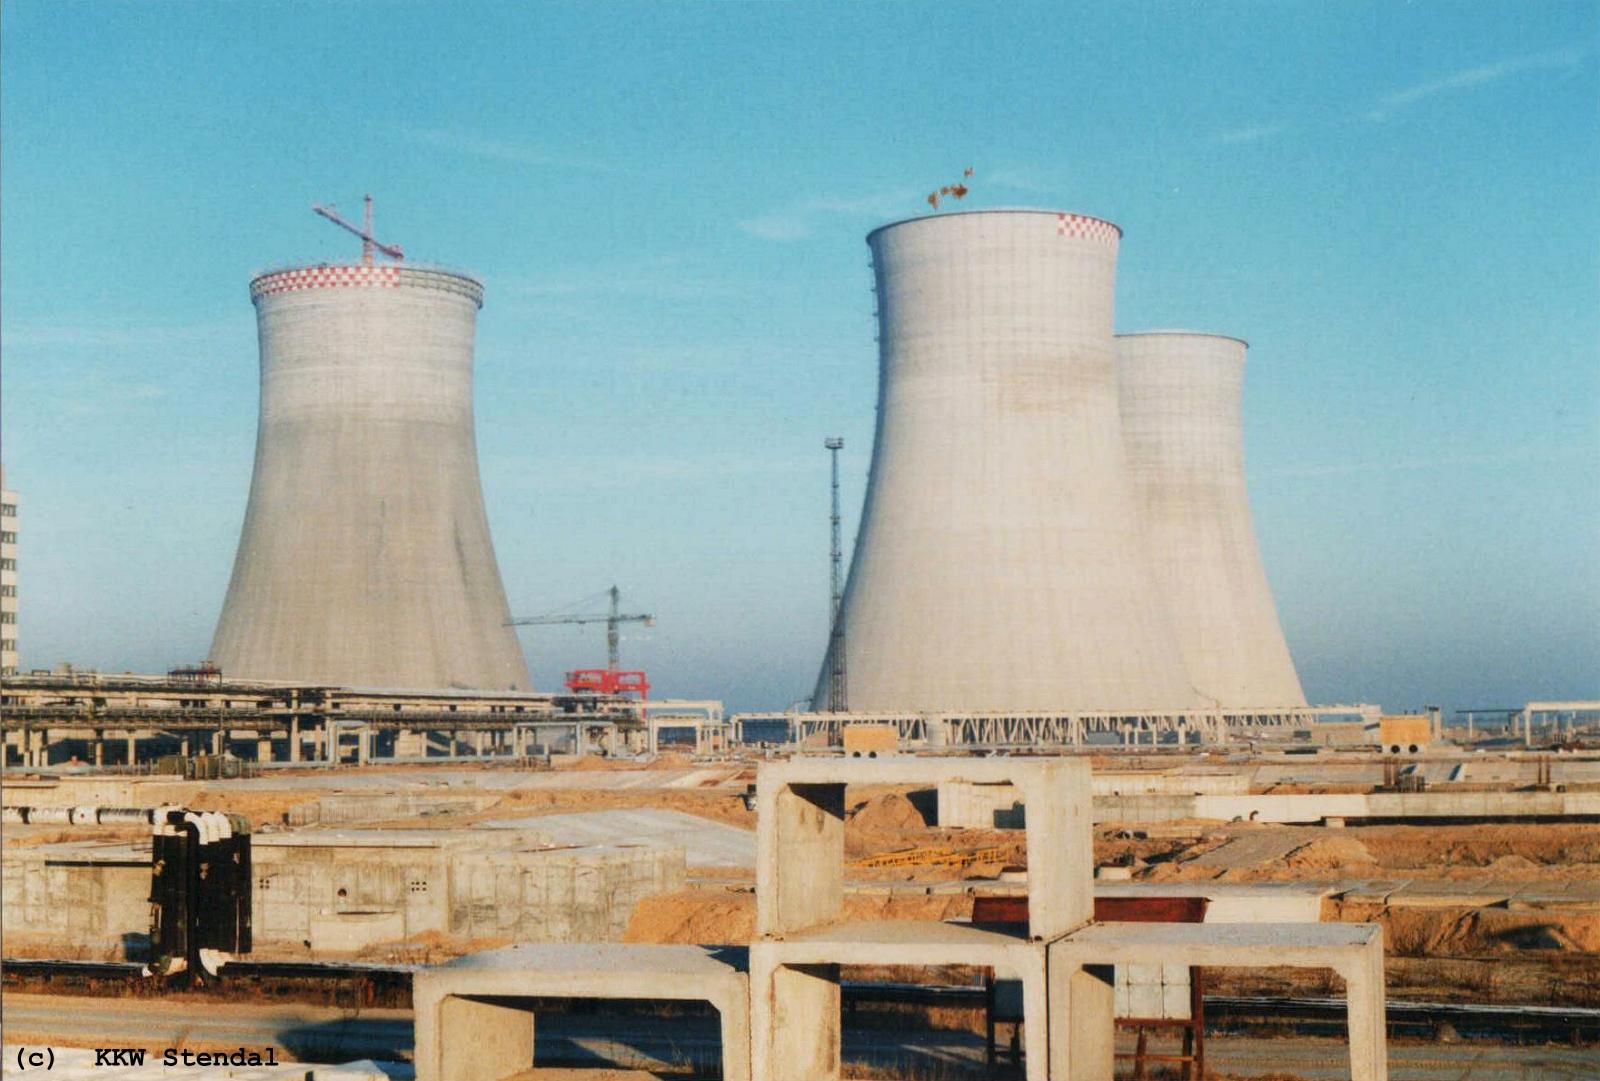  KKW Stendal, Baustelle 1990, Kühlturmfeld : rechts für Reaktor A und links
 für
 Reaktor B 